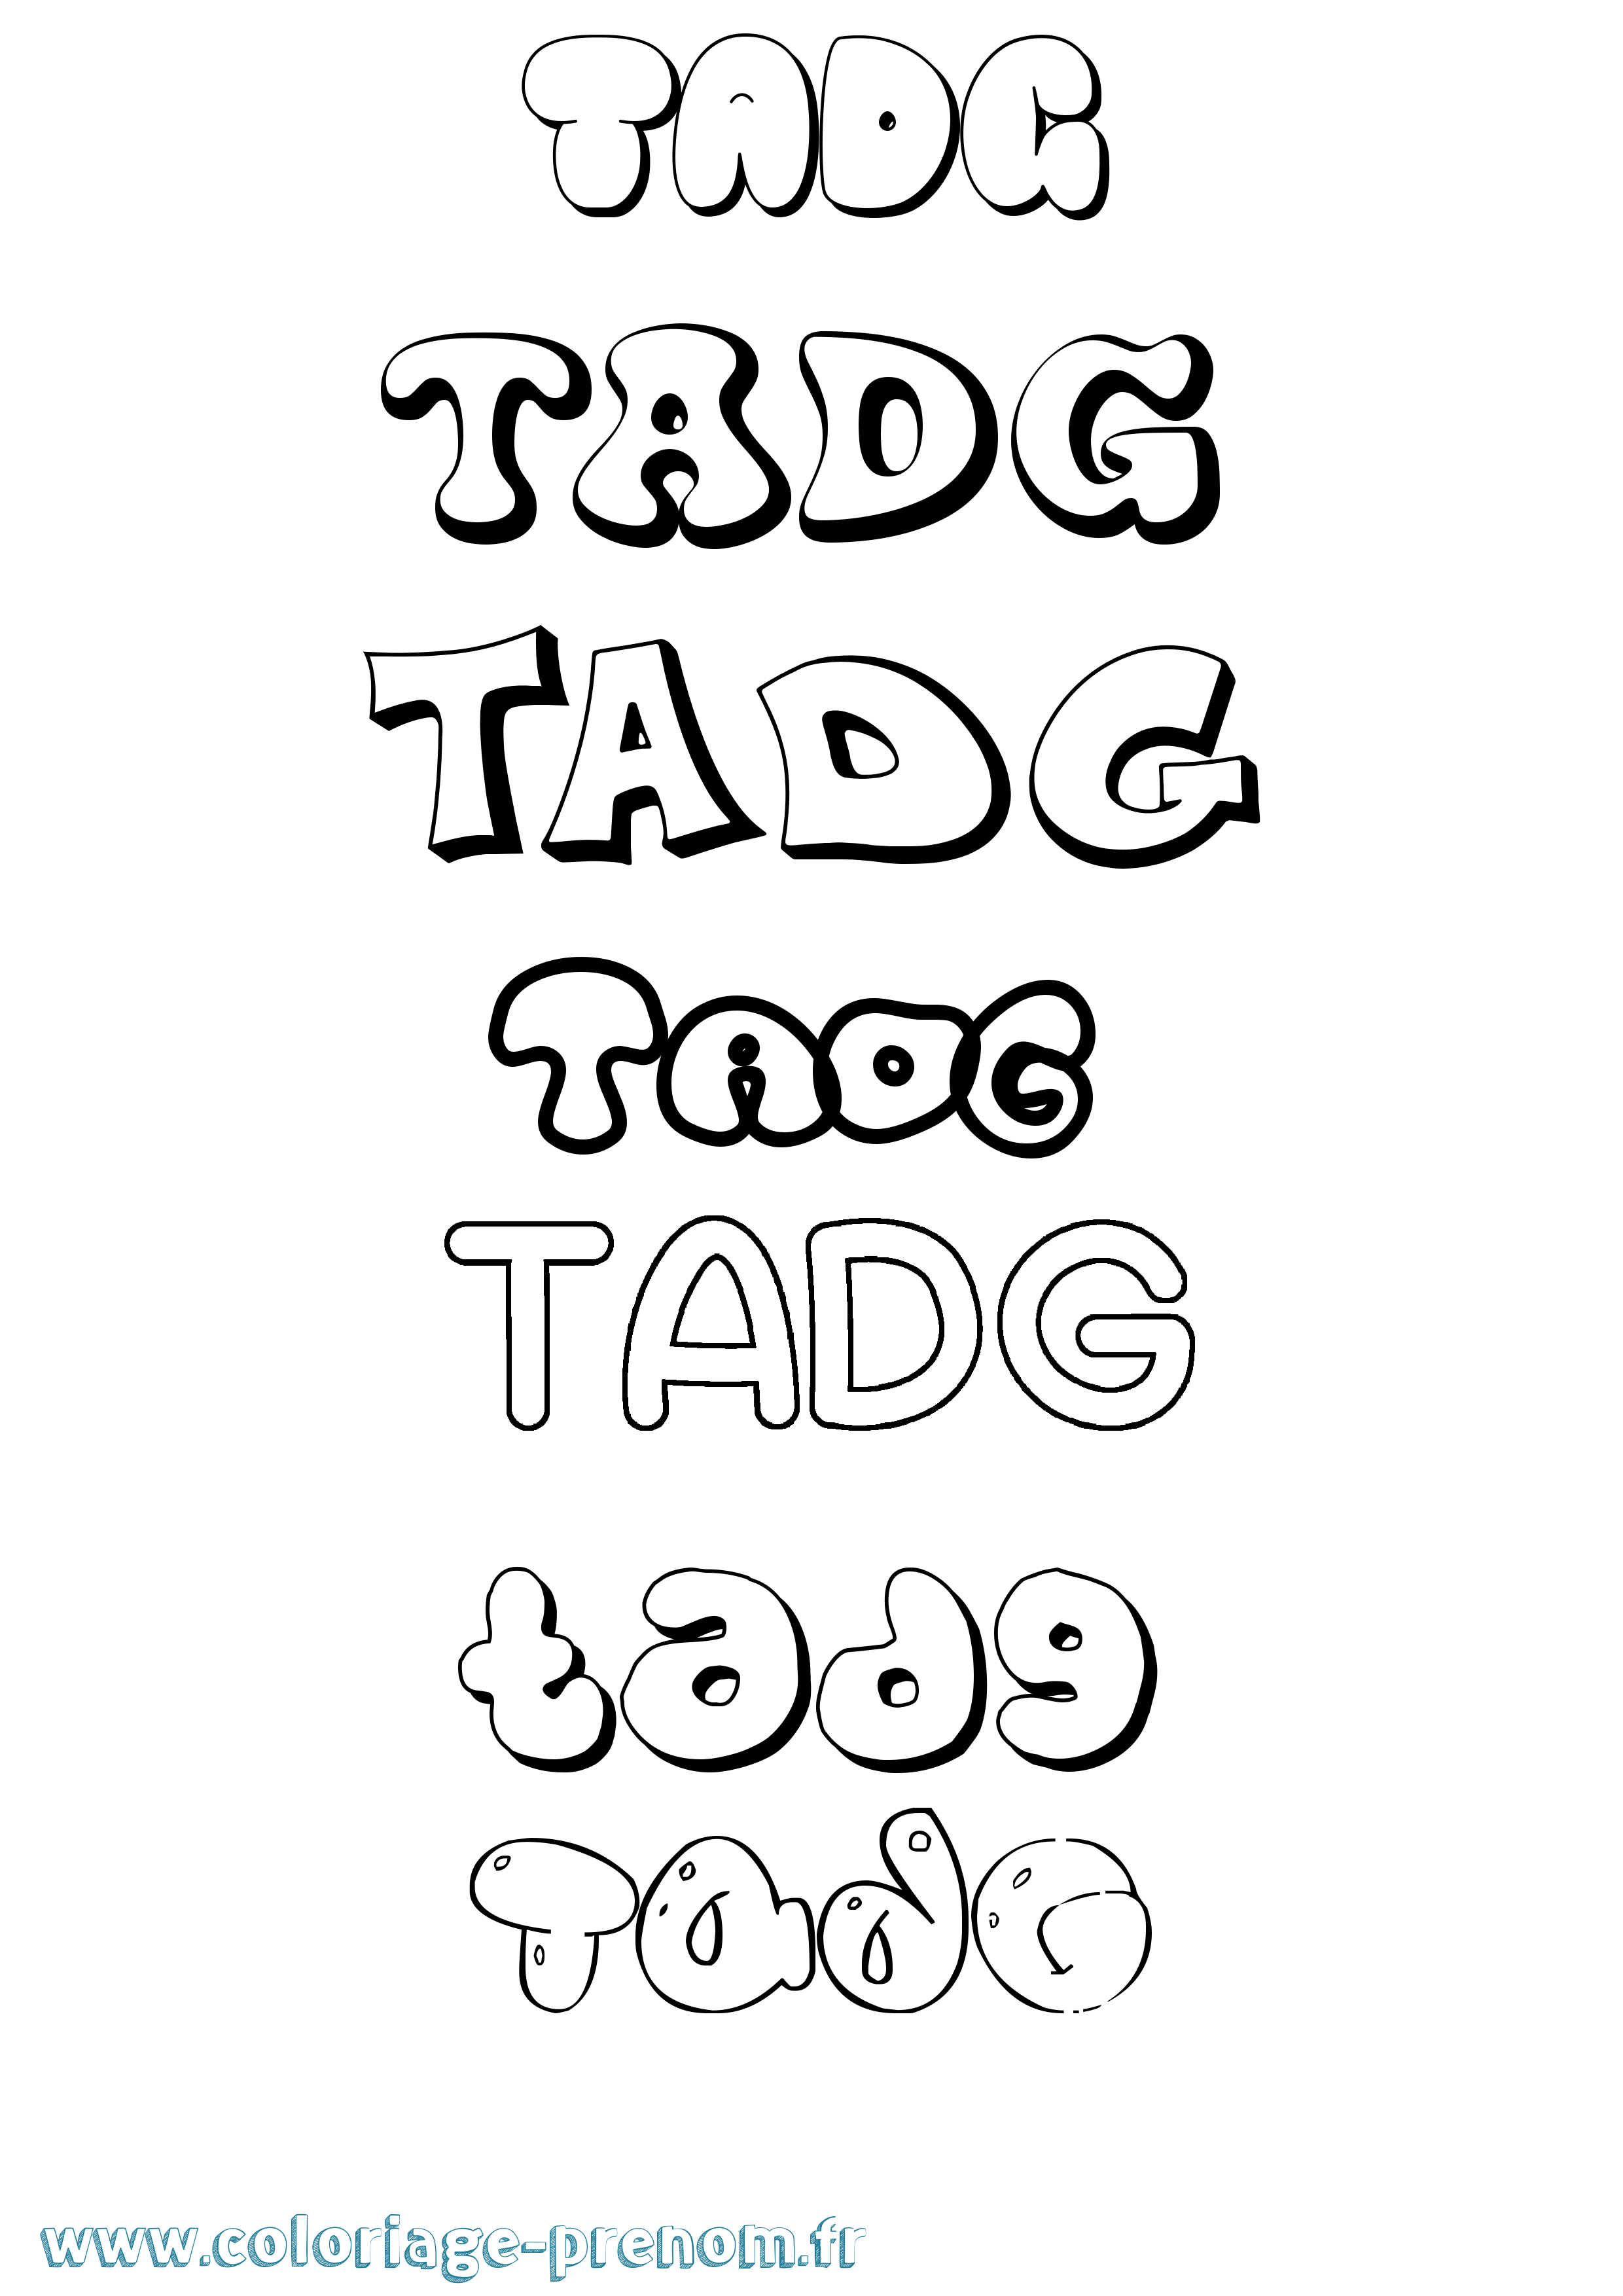 Coloriage prénom Tadg Bubble